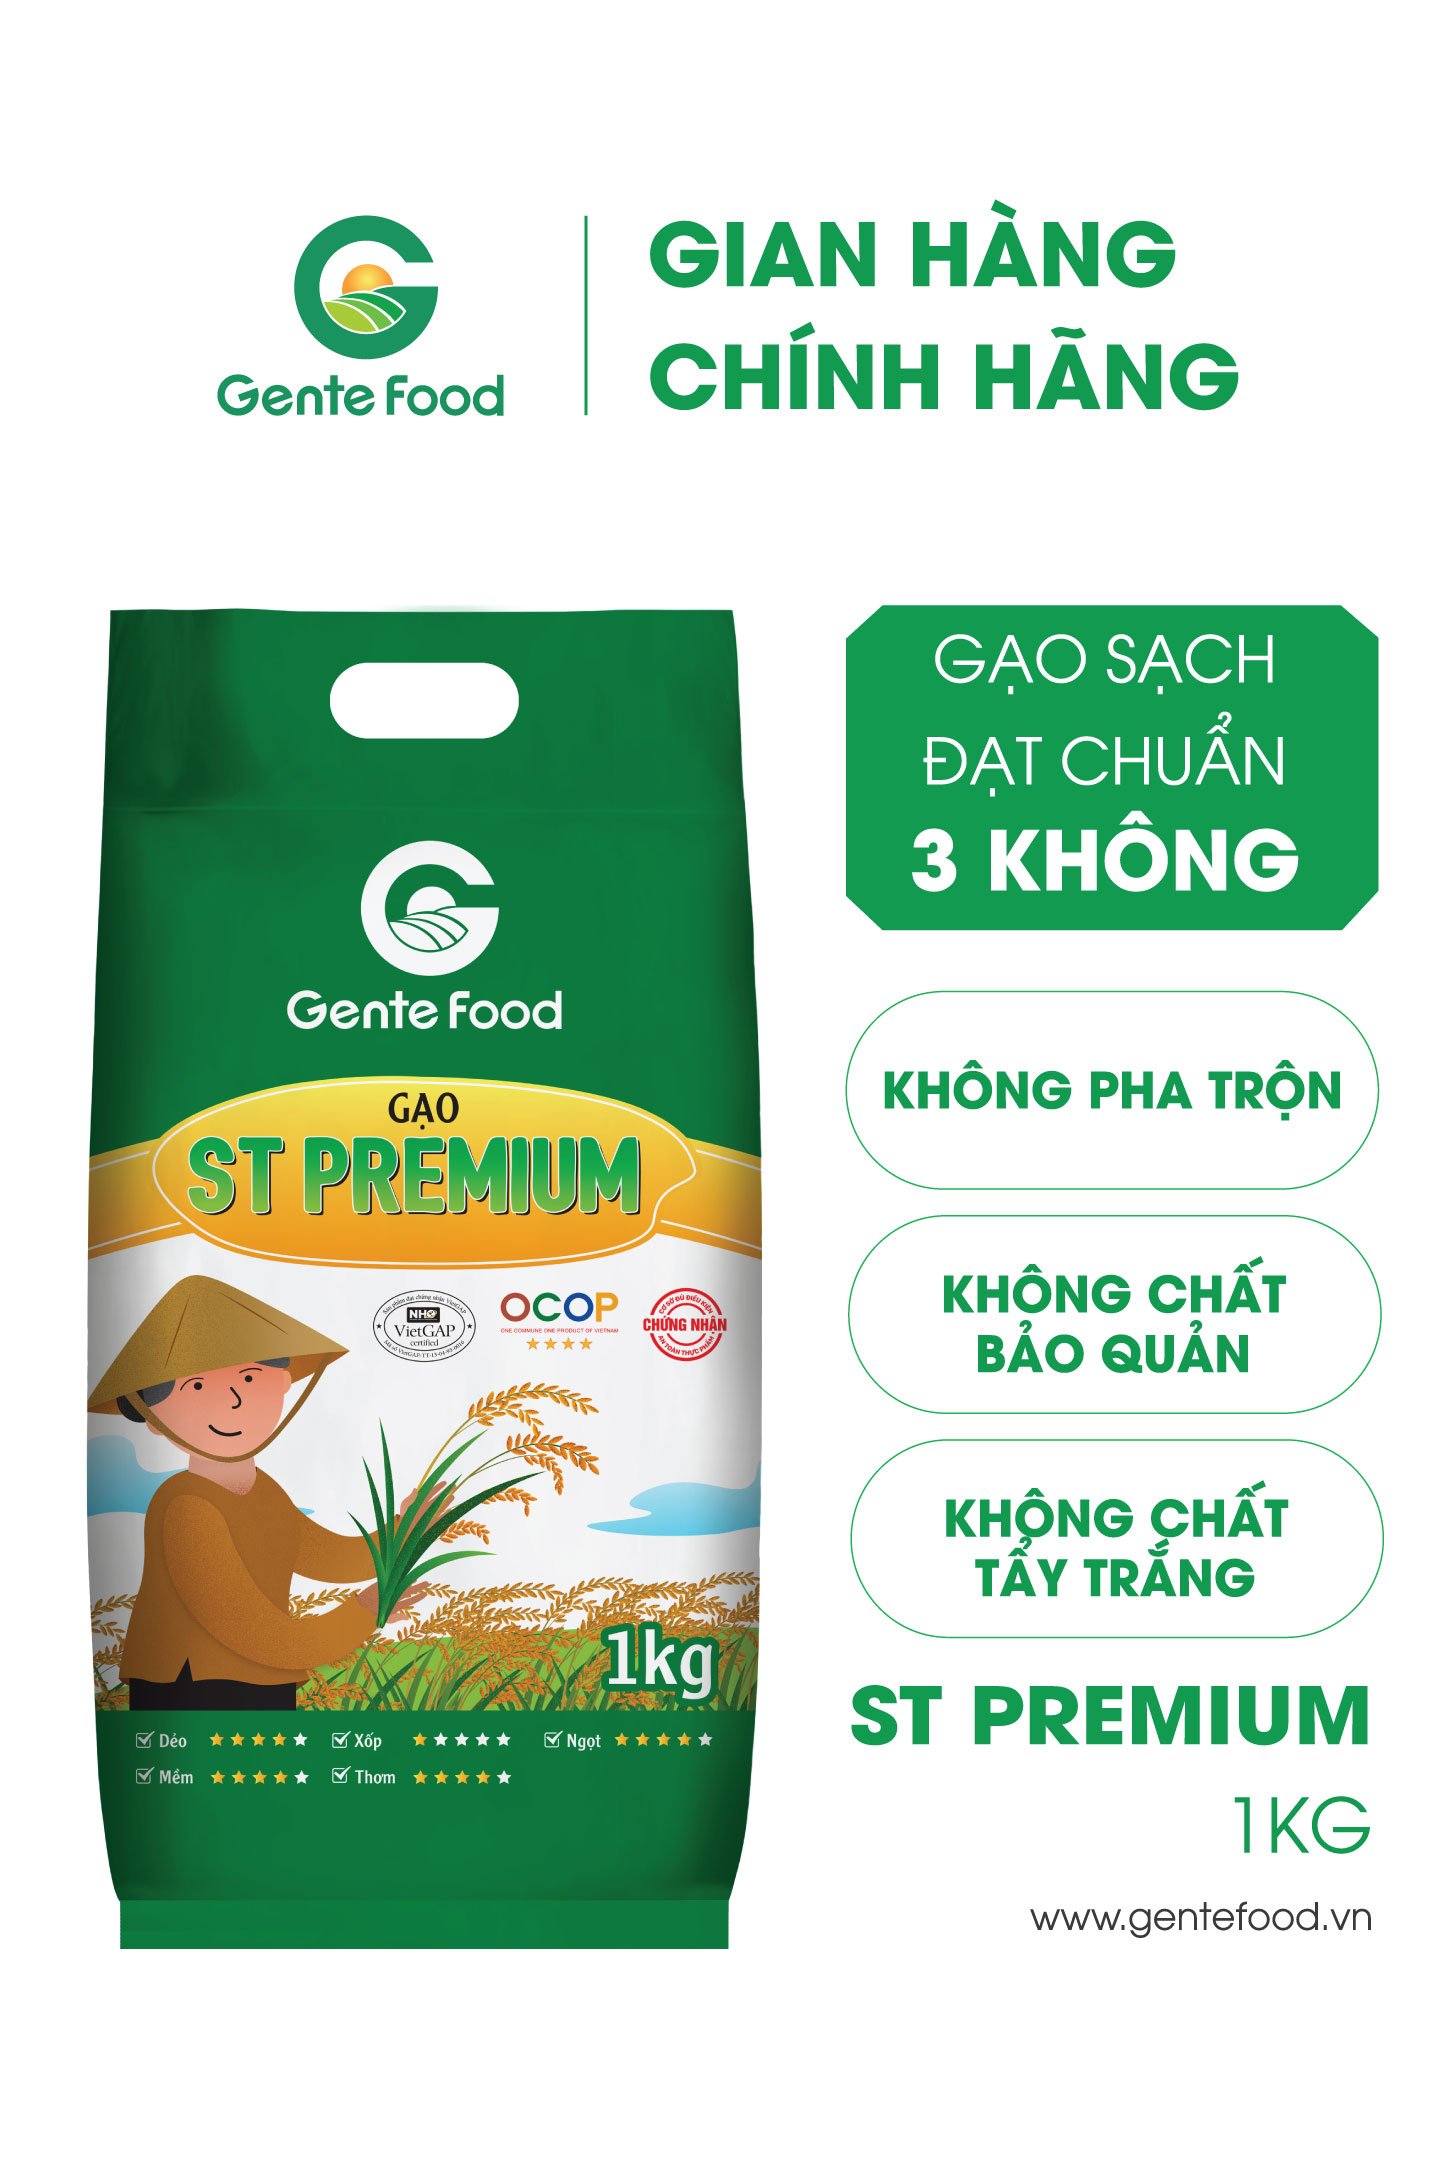 Gạo ST25 Premium Gente Food 1kg - Cơm Thơm, Dai, Mềm Dẻo, Vị Ngọt